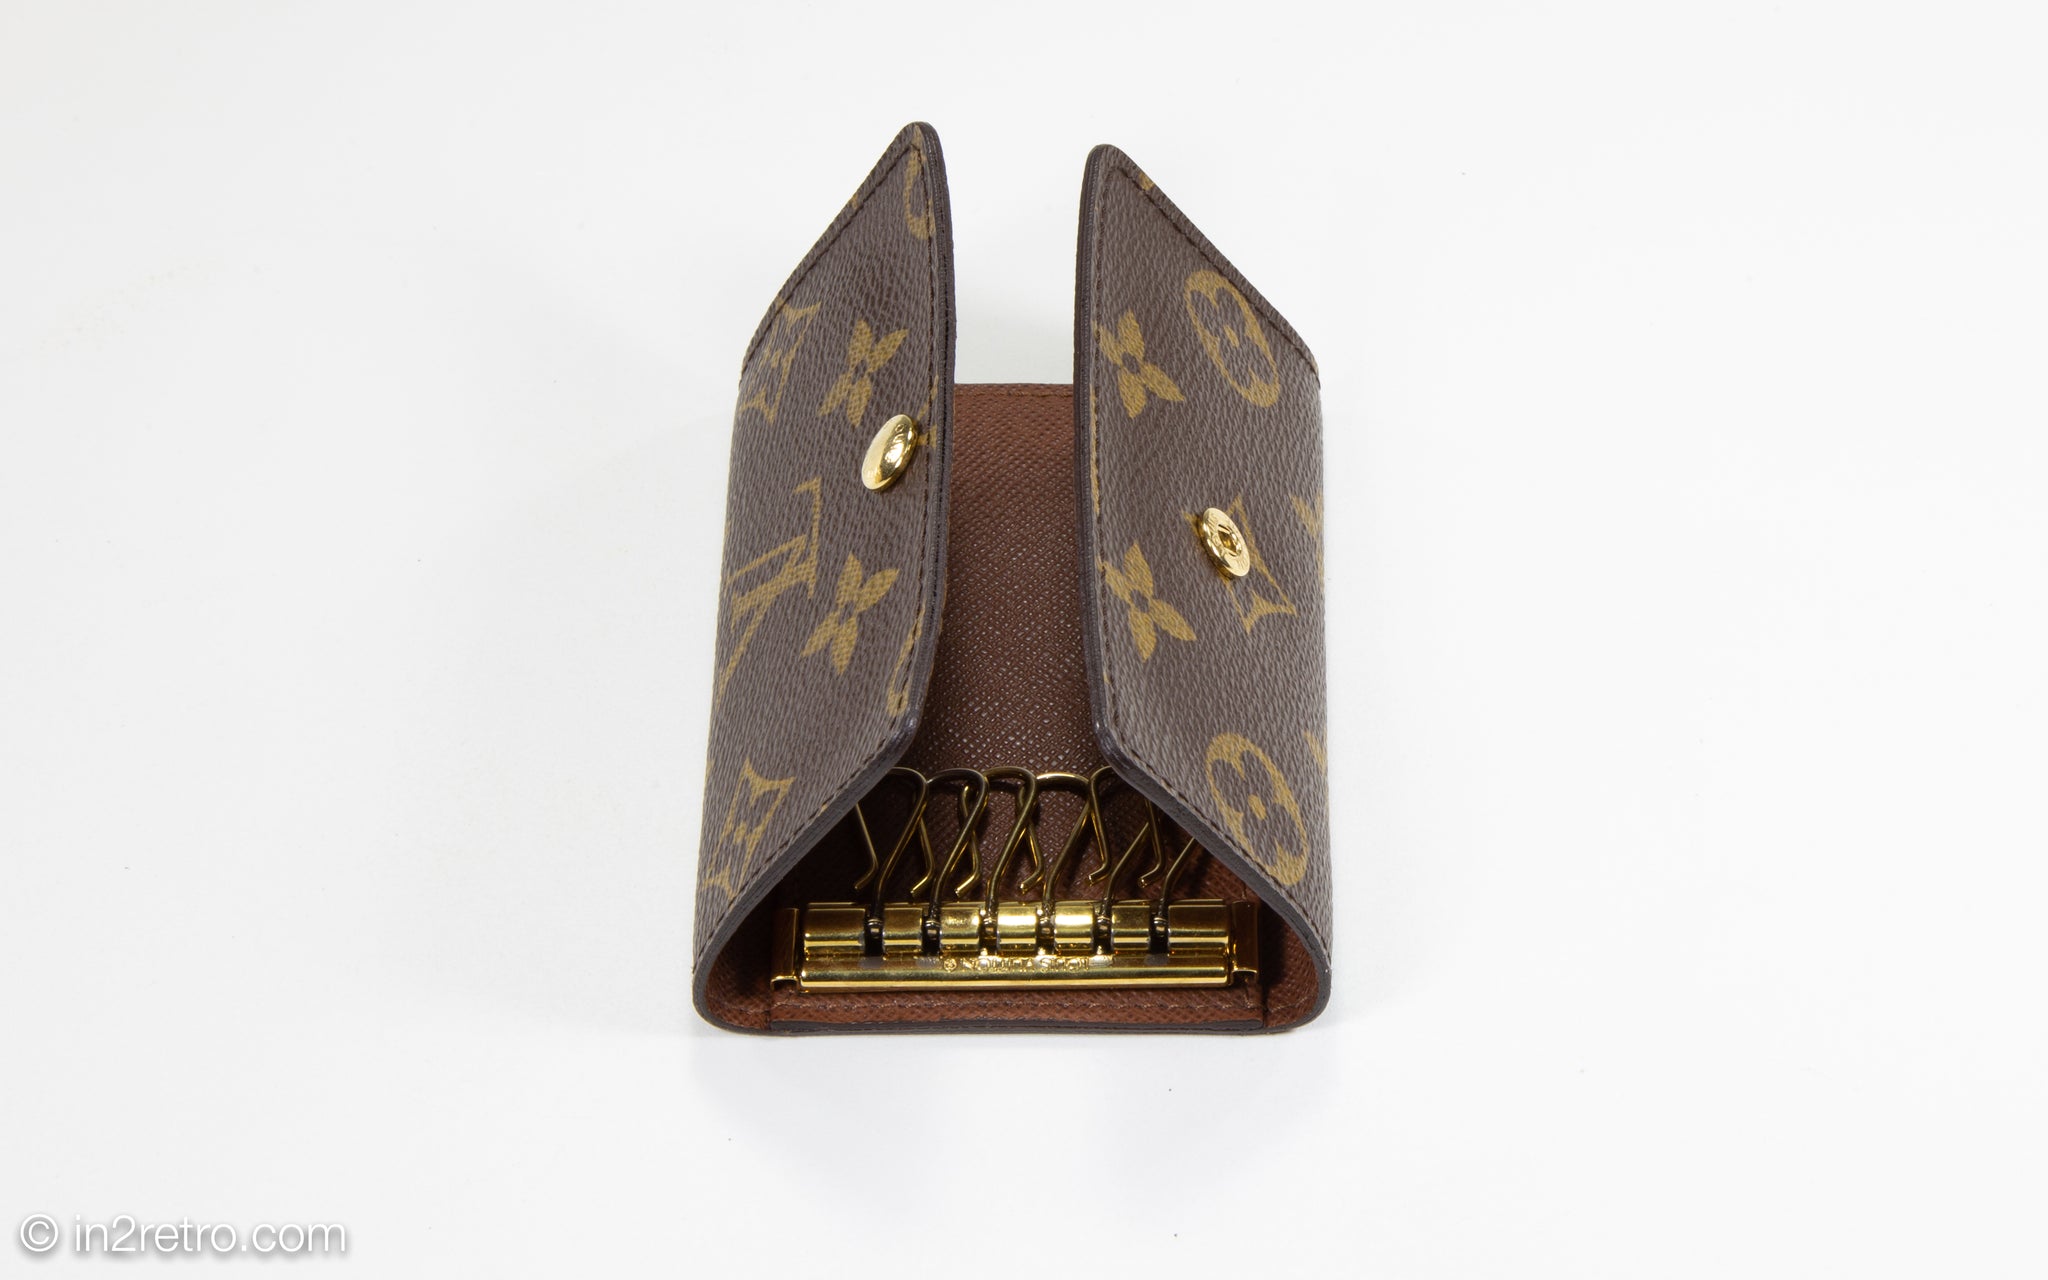 Vintage Authentic Louis Vuitton Key Holder Case Monogram